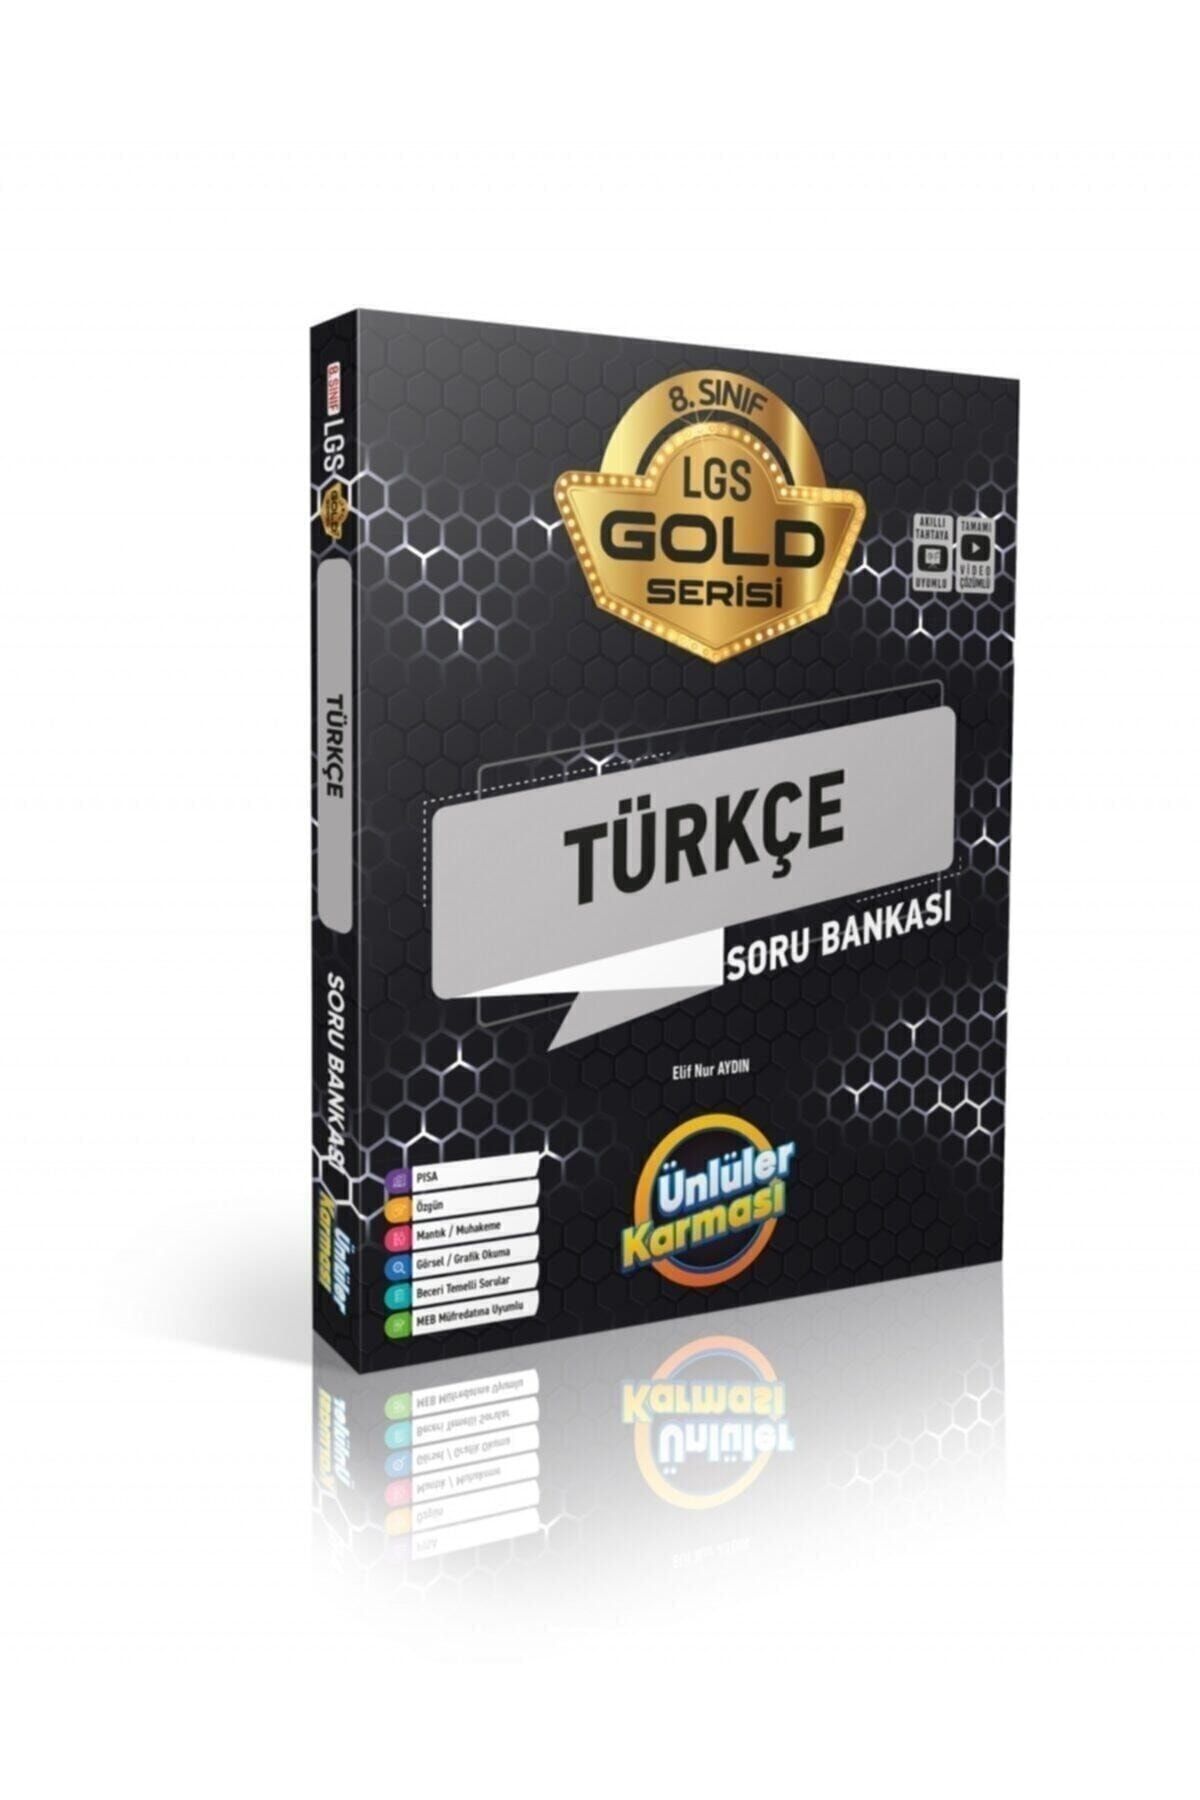 Ünlüler Karması 8.sınıf Türkçe Soru Bankası Gold Seri_0